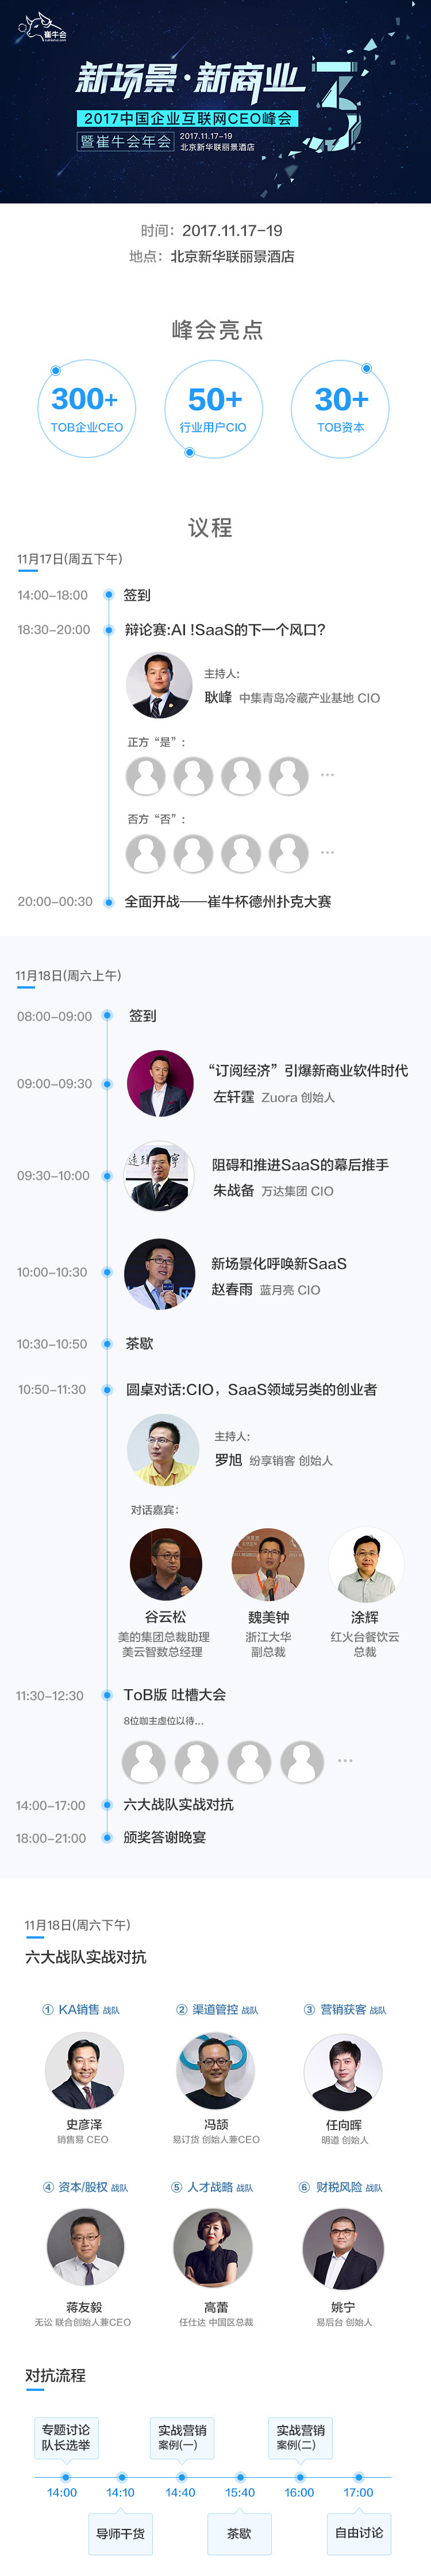 2017中国企业互联网CEO峰会暨崔牛会年会